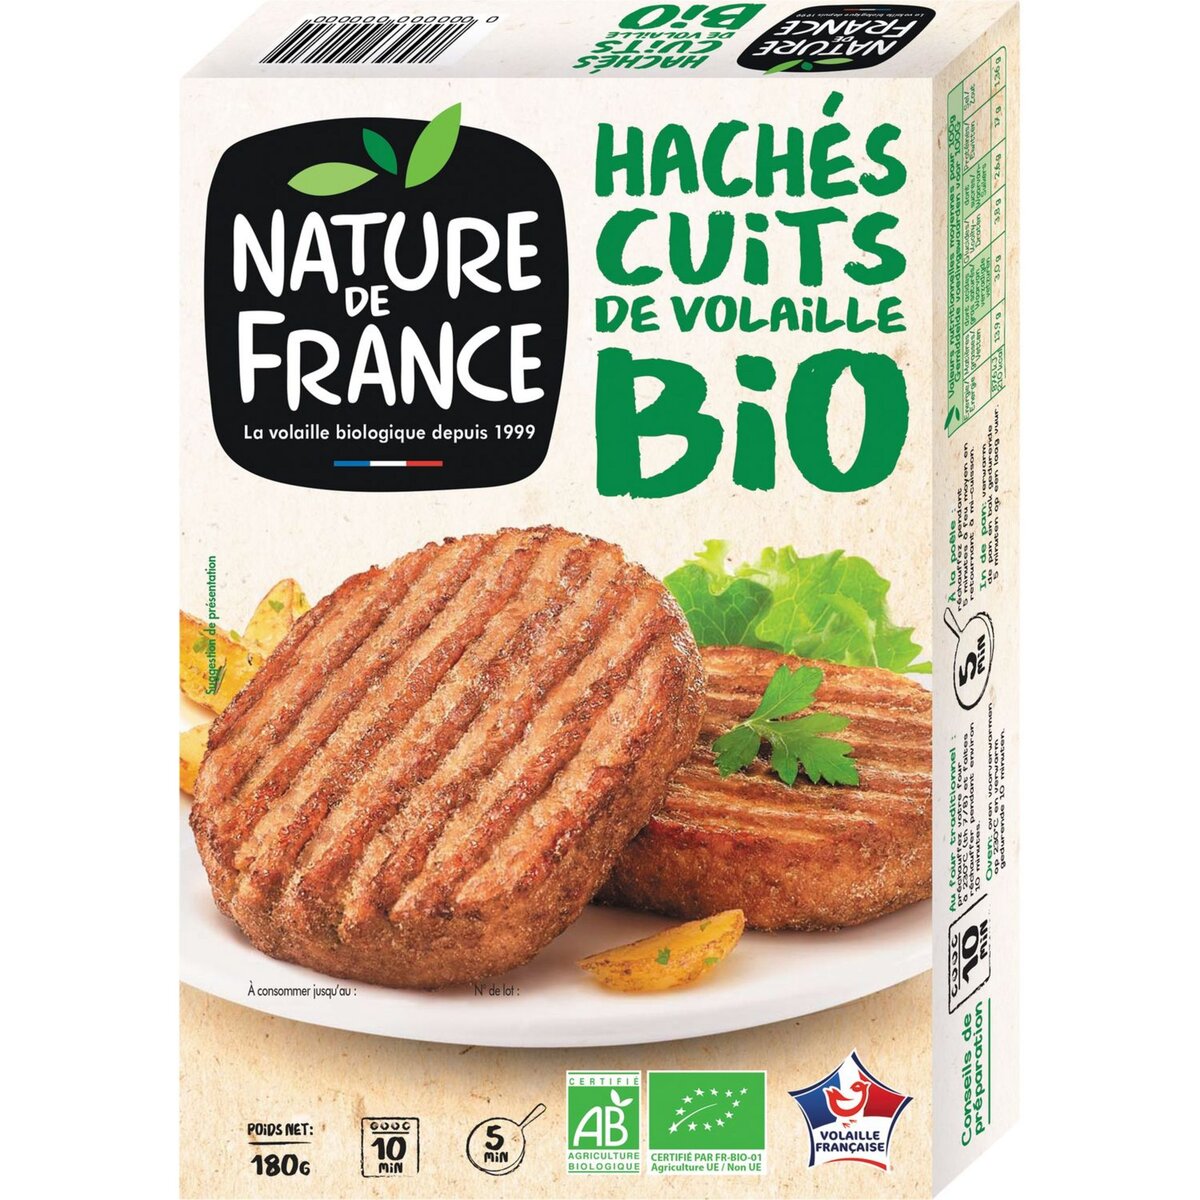 NATURE DE FRANCE Haché cuit de volaille bio 2 pièces 180g